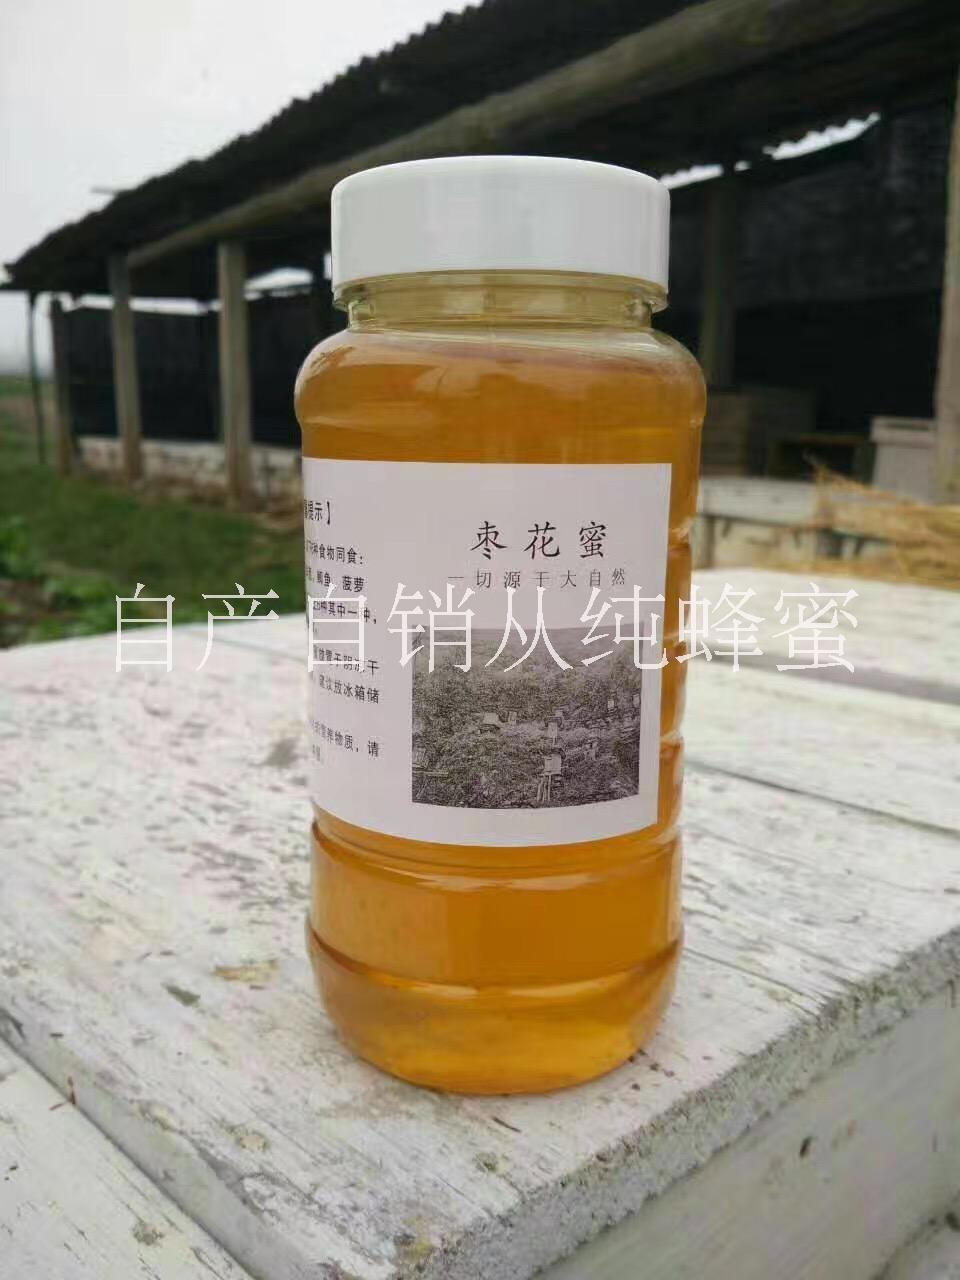 枣花蜜蜂蜜纯正天然野生农家自产 原生态 零添加